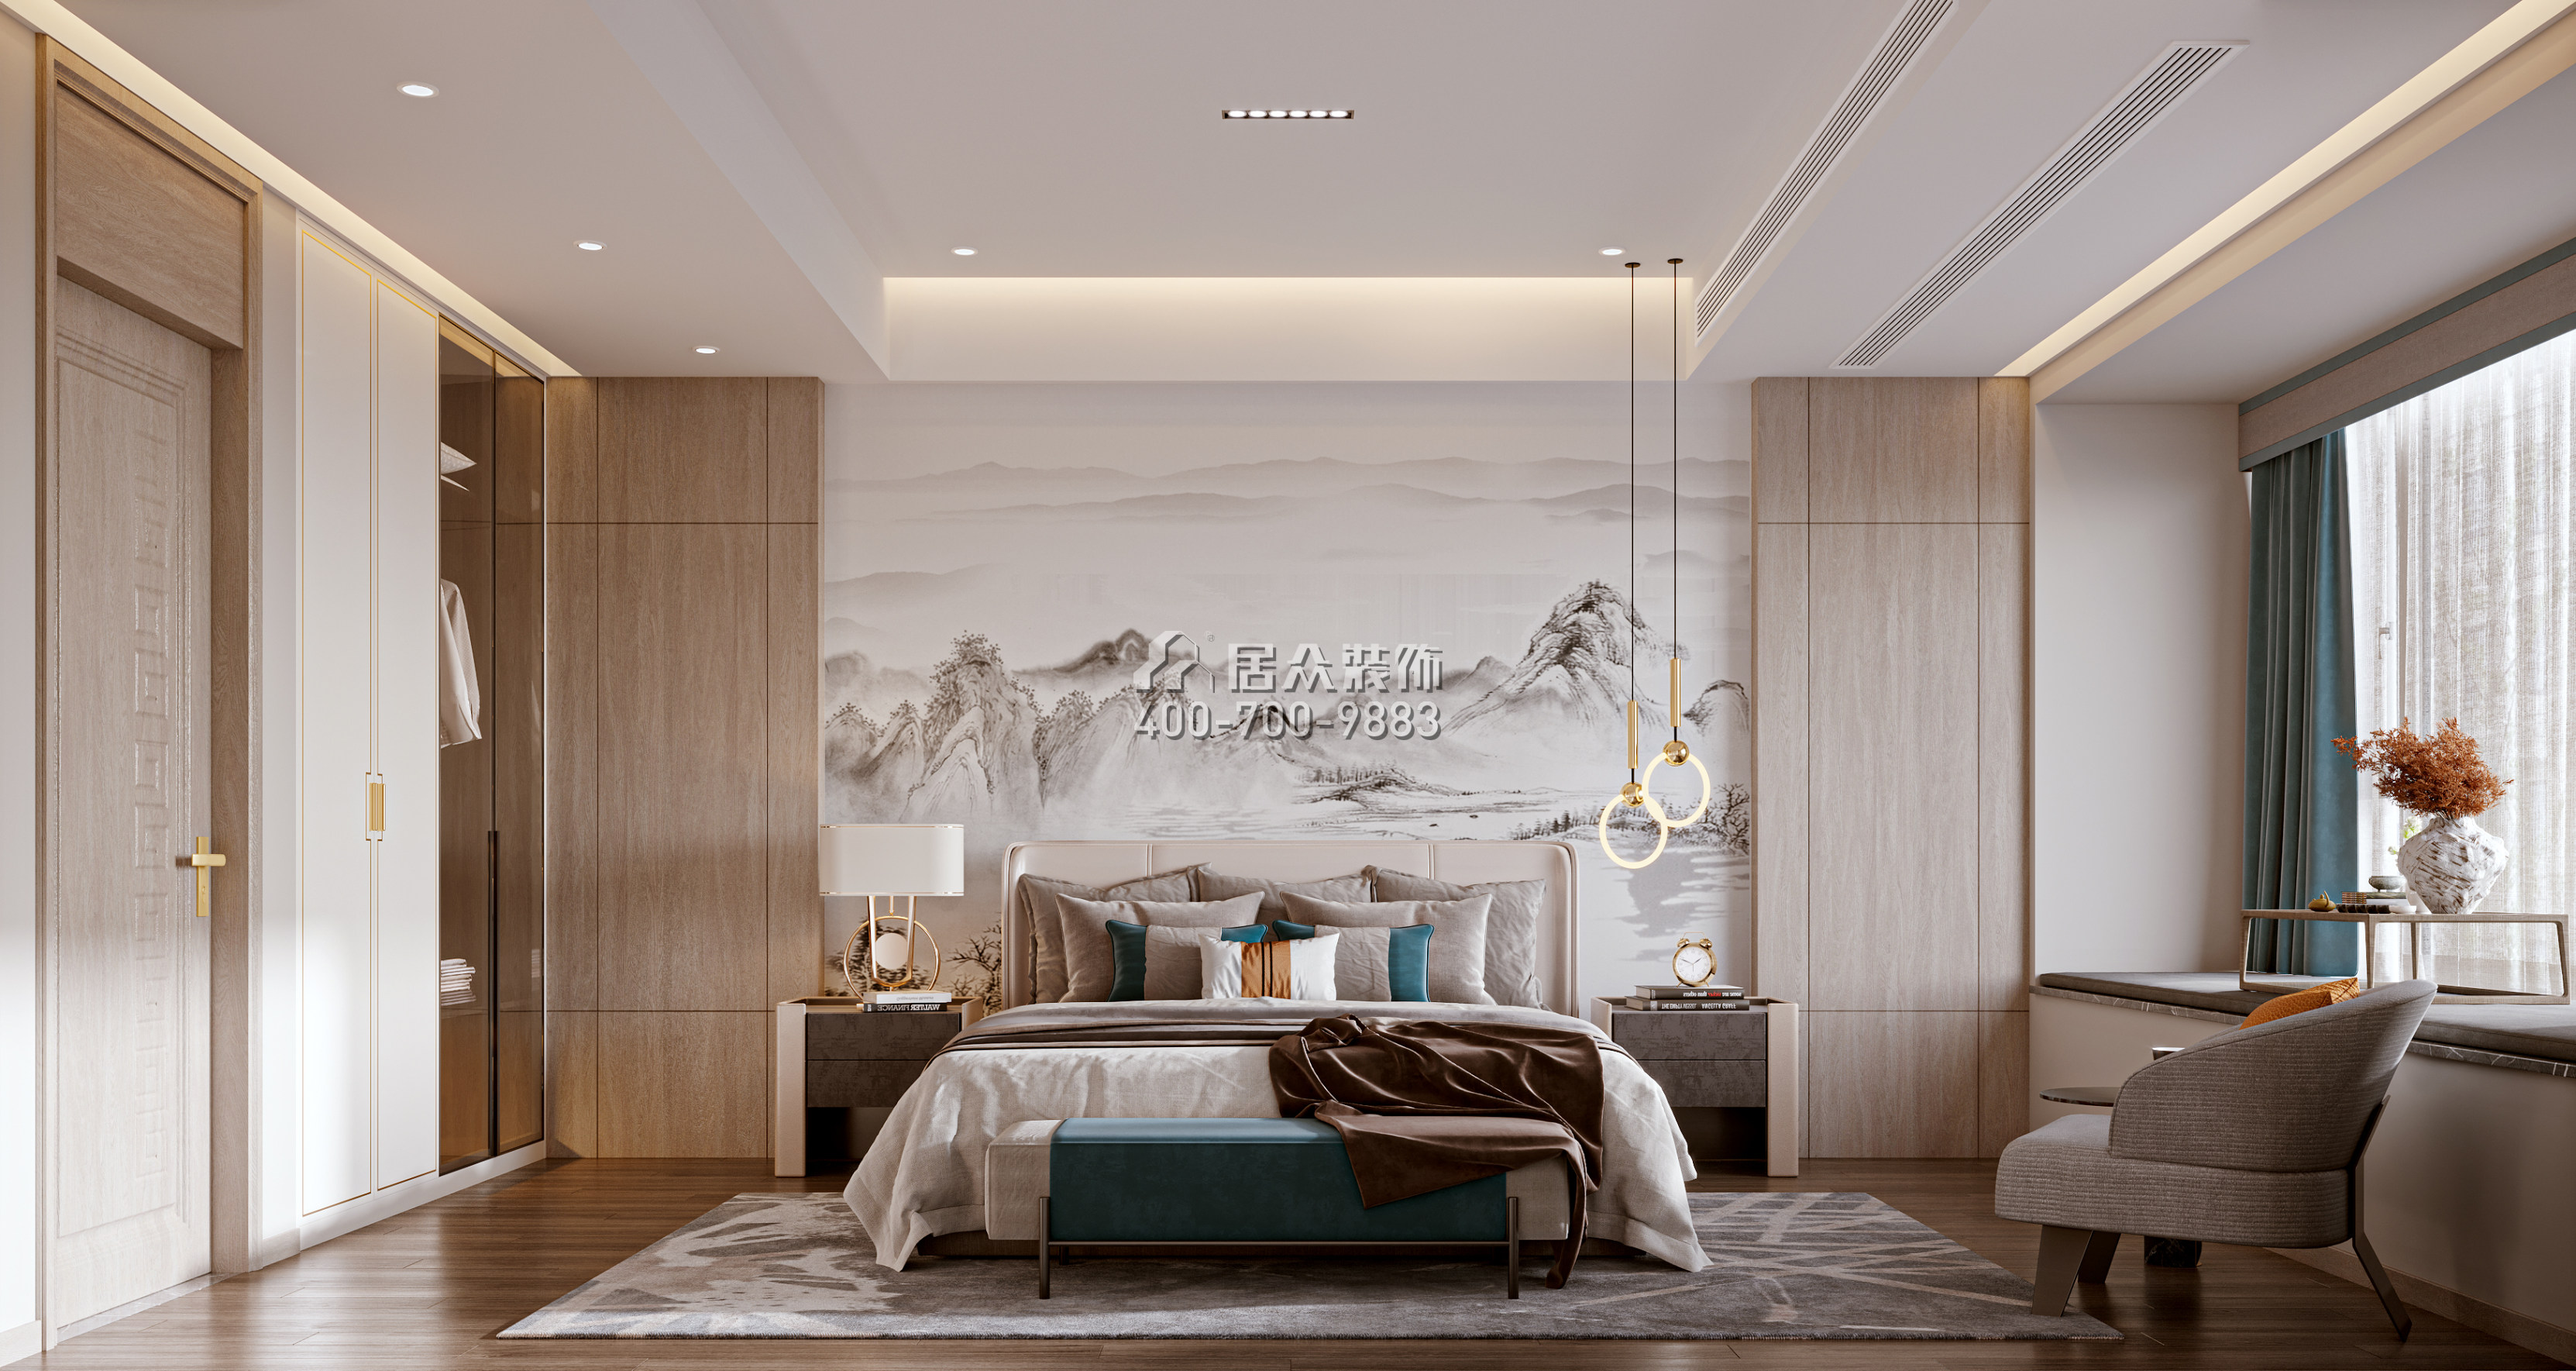 恒裕水墨蘭亭360平方米中式風格復式戶型臥室裝修效果圖